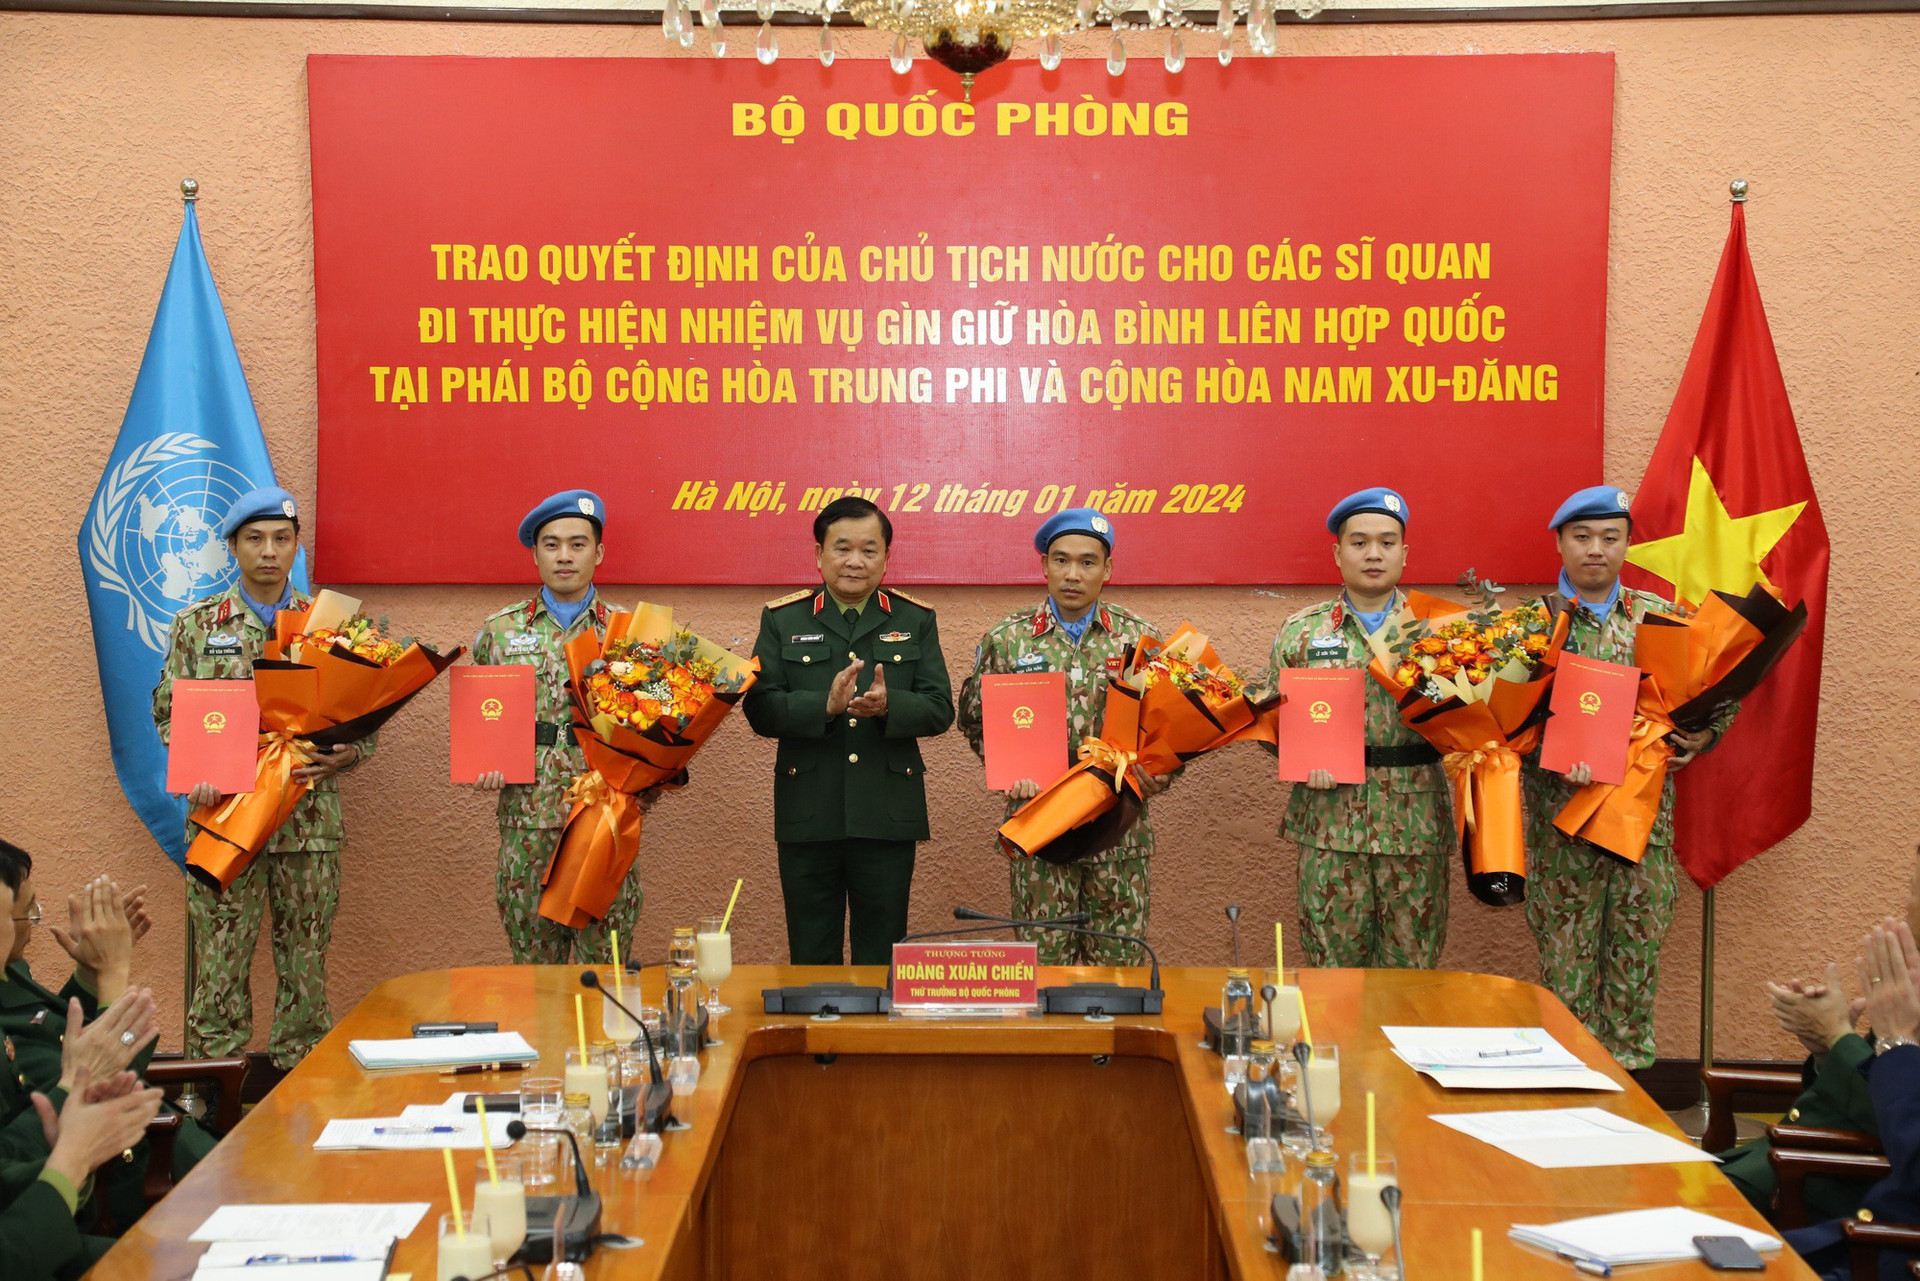 Thượng tướng Hoàng Xuân Chiến trao quyết định của Chủ tịch nước cho các sĩ quan đi thực hiện nhiệm vụ gìn giữ hòa bình Liên Hiệp Quốc - Ảnh: MẠNH HÙNG